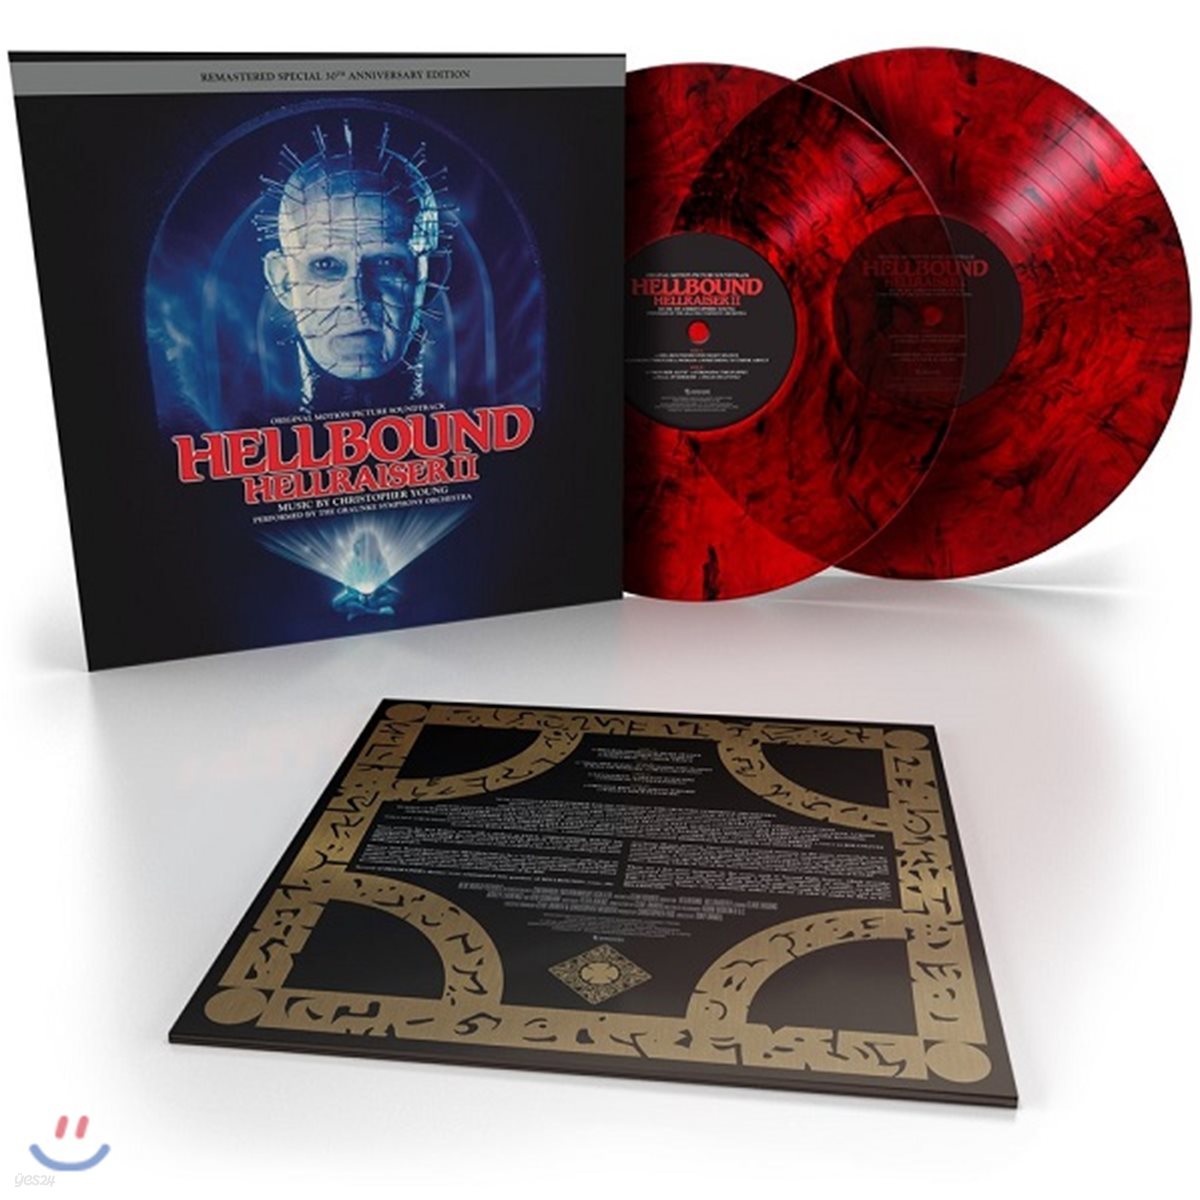 헬레이저 2 영화음악 (Hellbound: Hellraiser II OST by Christopher Young) [레드 & 블랙 스모크 블러드쉐드 컬러 2LP]